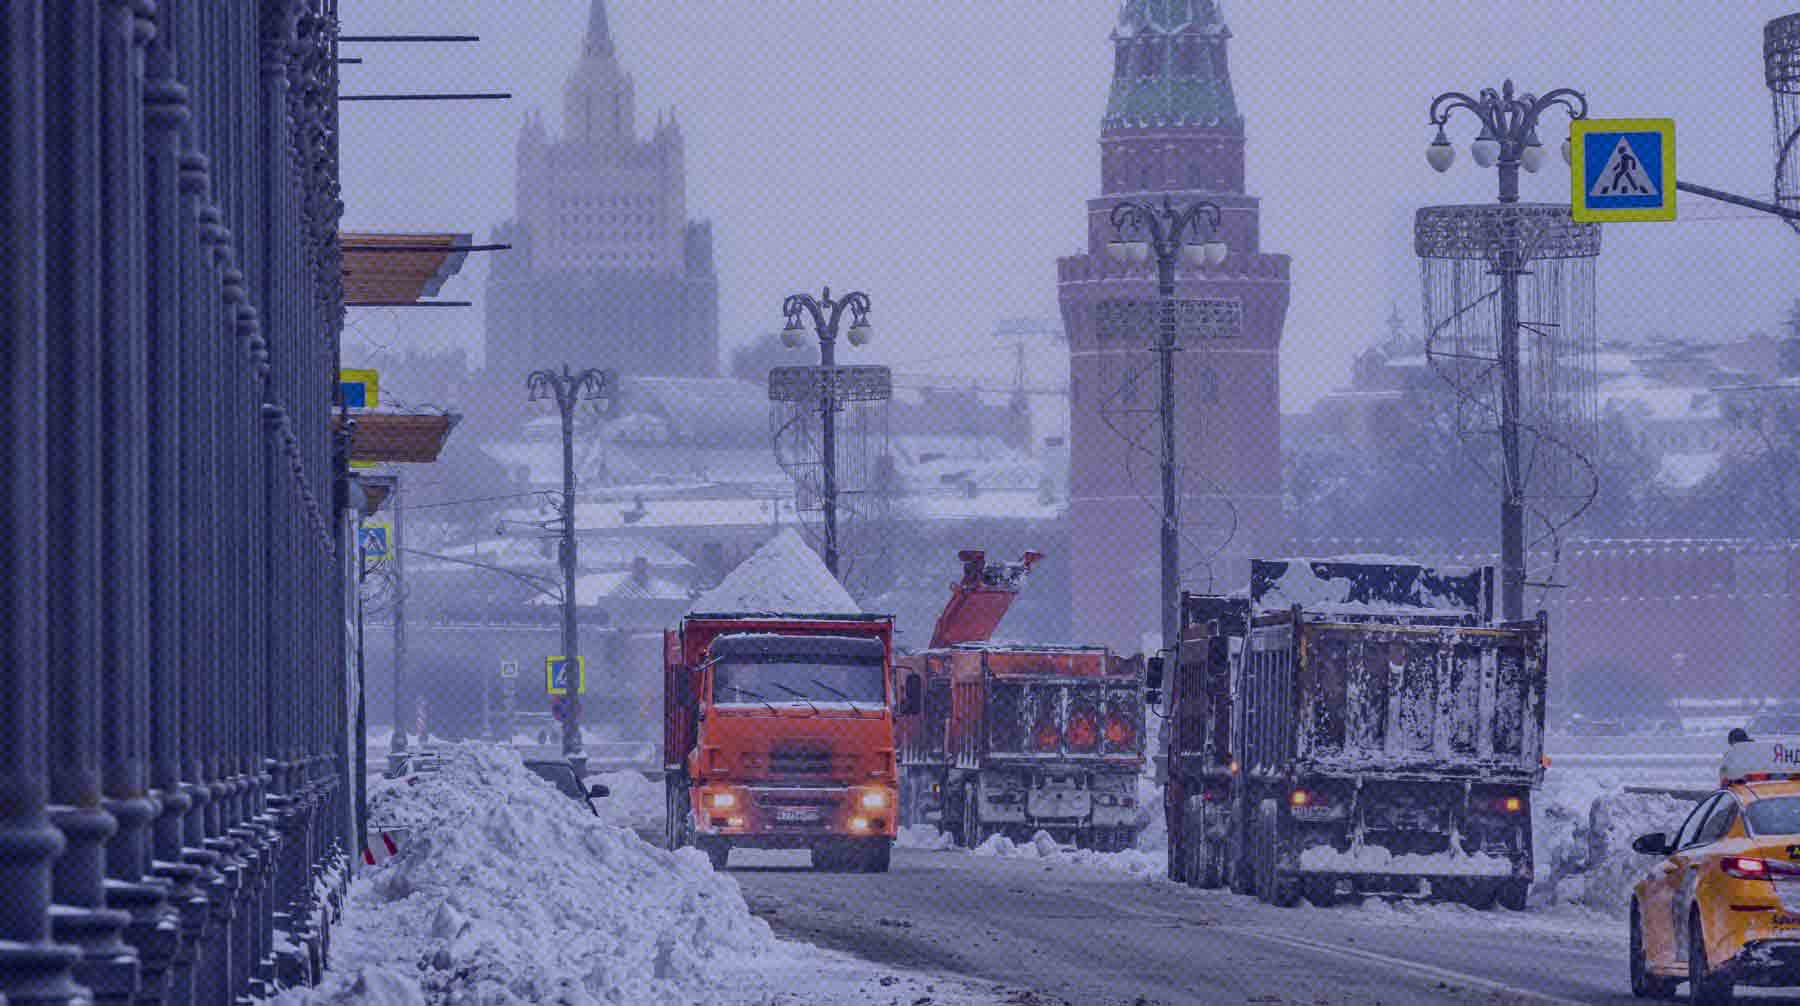 Пробки на дорогах и сугробы по колено. Сильнейший снегопад со времен Сталина парализовал движение в Москве